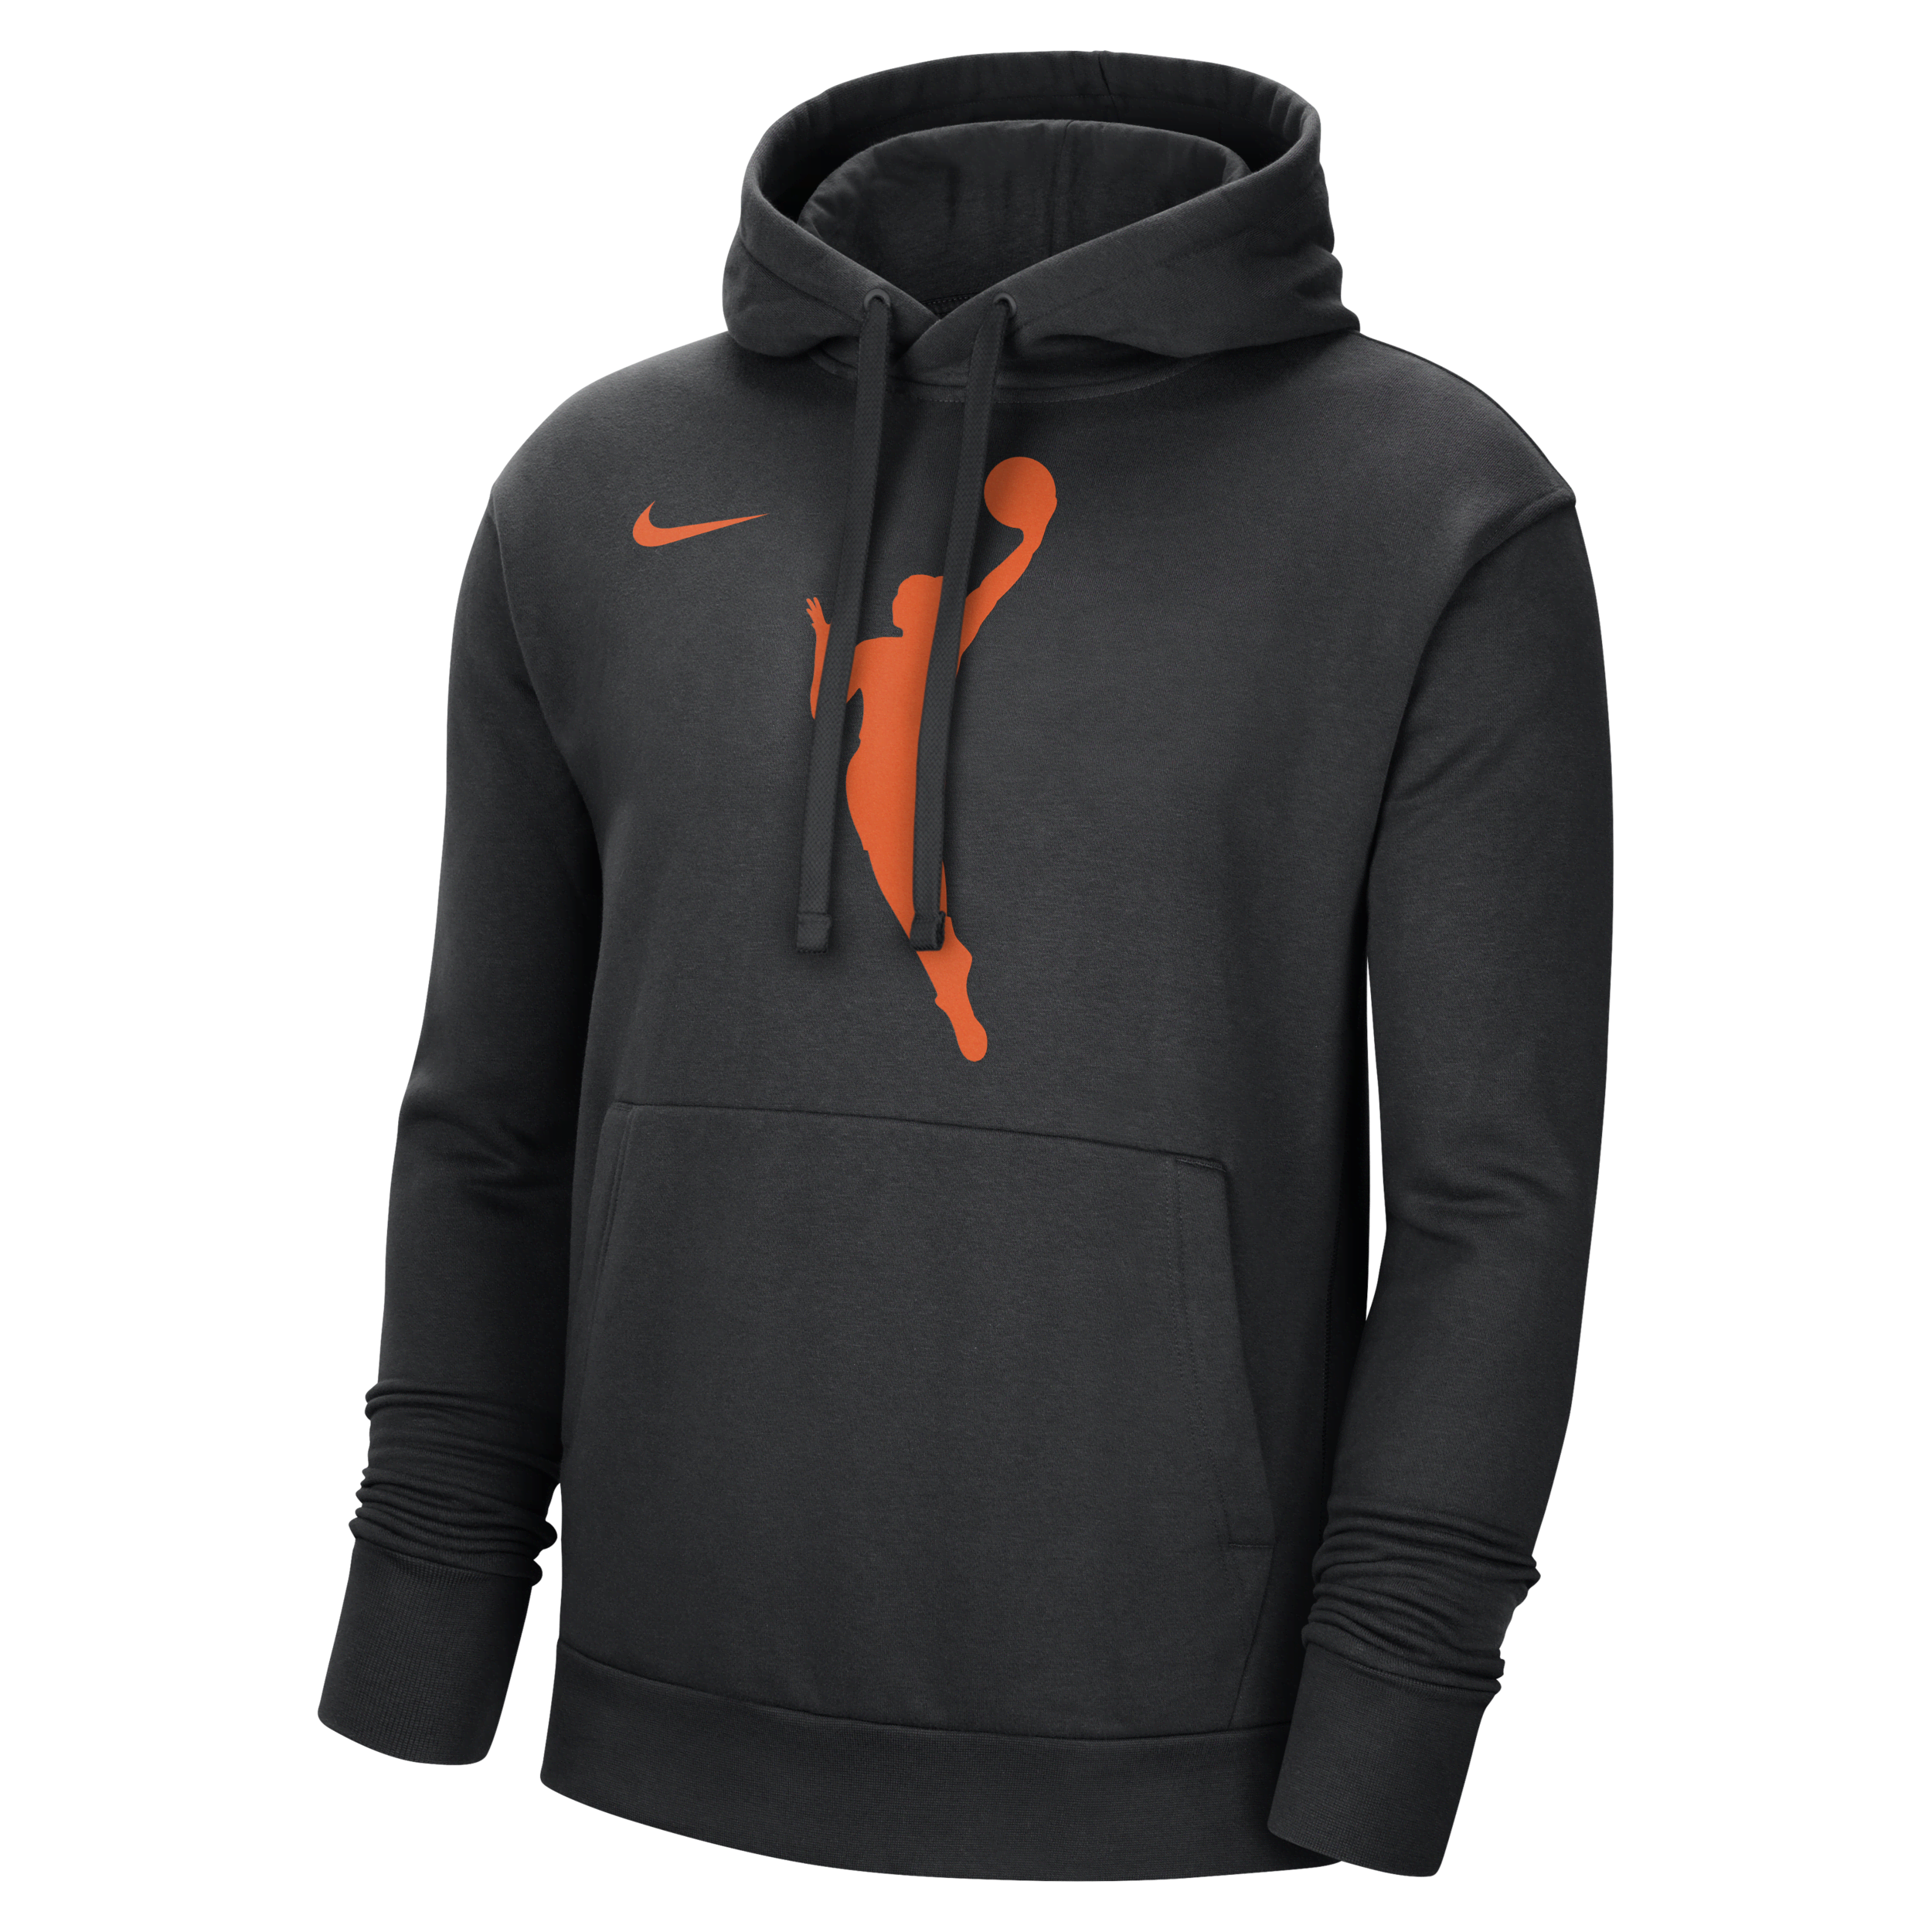 WNBA Sudadera con capucha de tejido Fleece Nike - Hombre - Negro